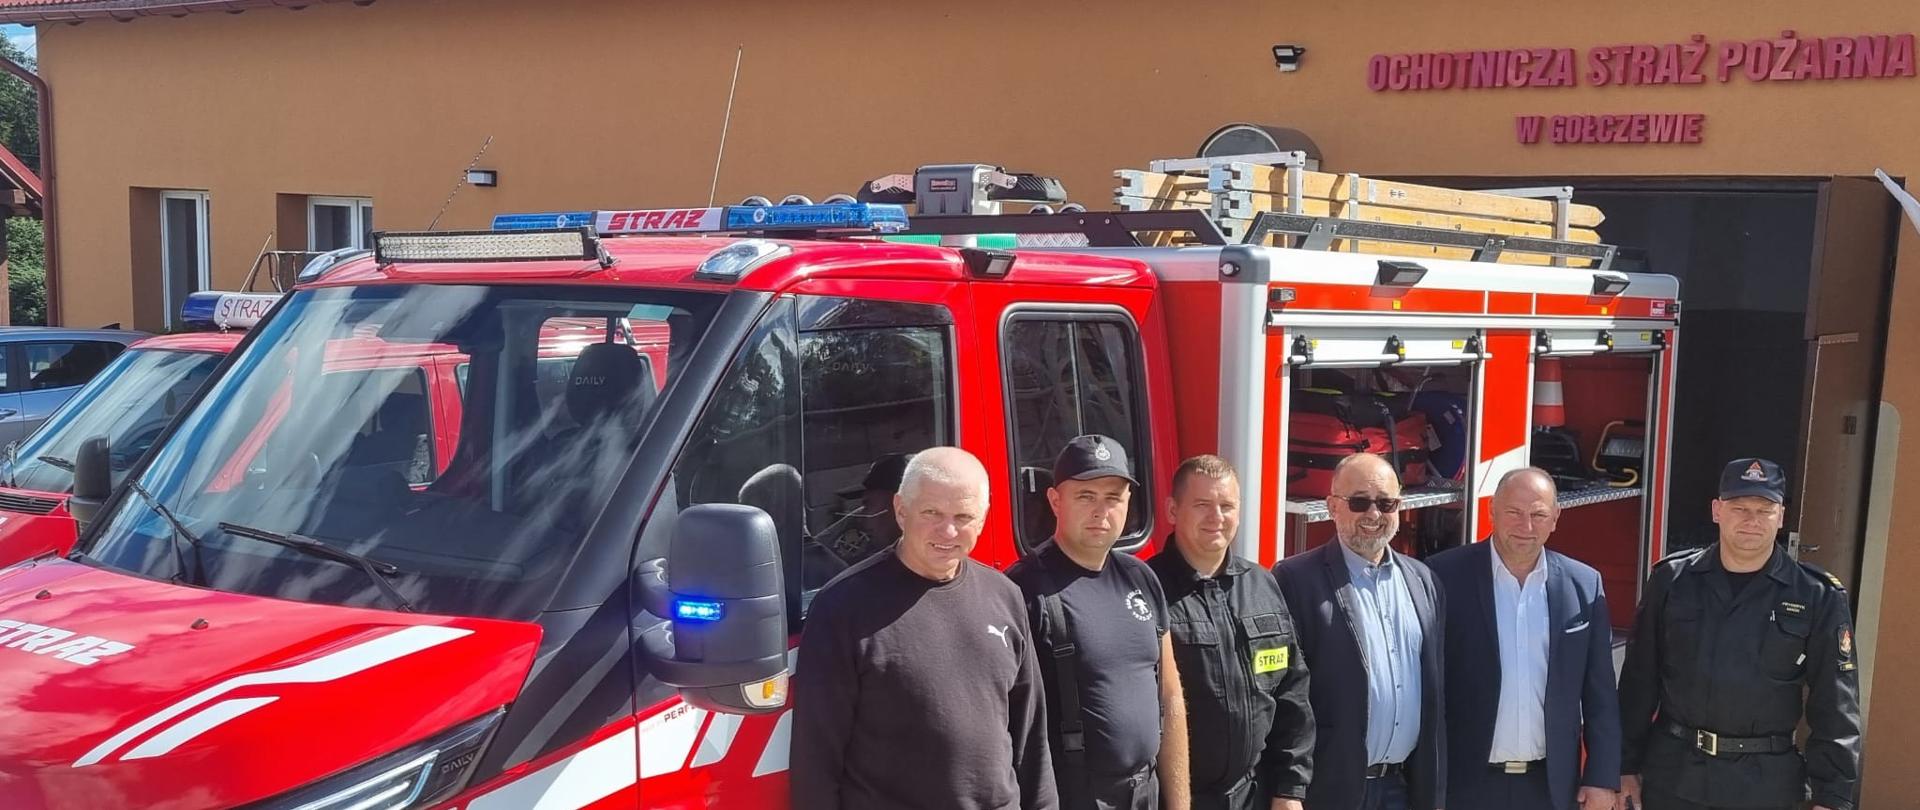 Przed remizą strażacką OSP w Gołczewie stoi nowy wóz strażacki. Wzdłuż jego dłuższego boku stoją w rzędzie goście wizytujący remizę (m.in. Zastępca Komendanta KP PSP w Bytowie, Prezes OSP, Prezes ZOSP i wójt gminy).